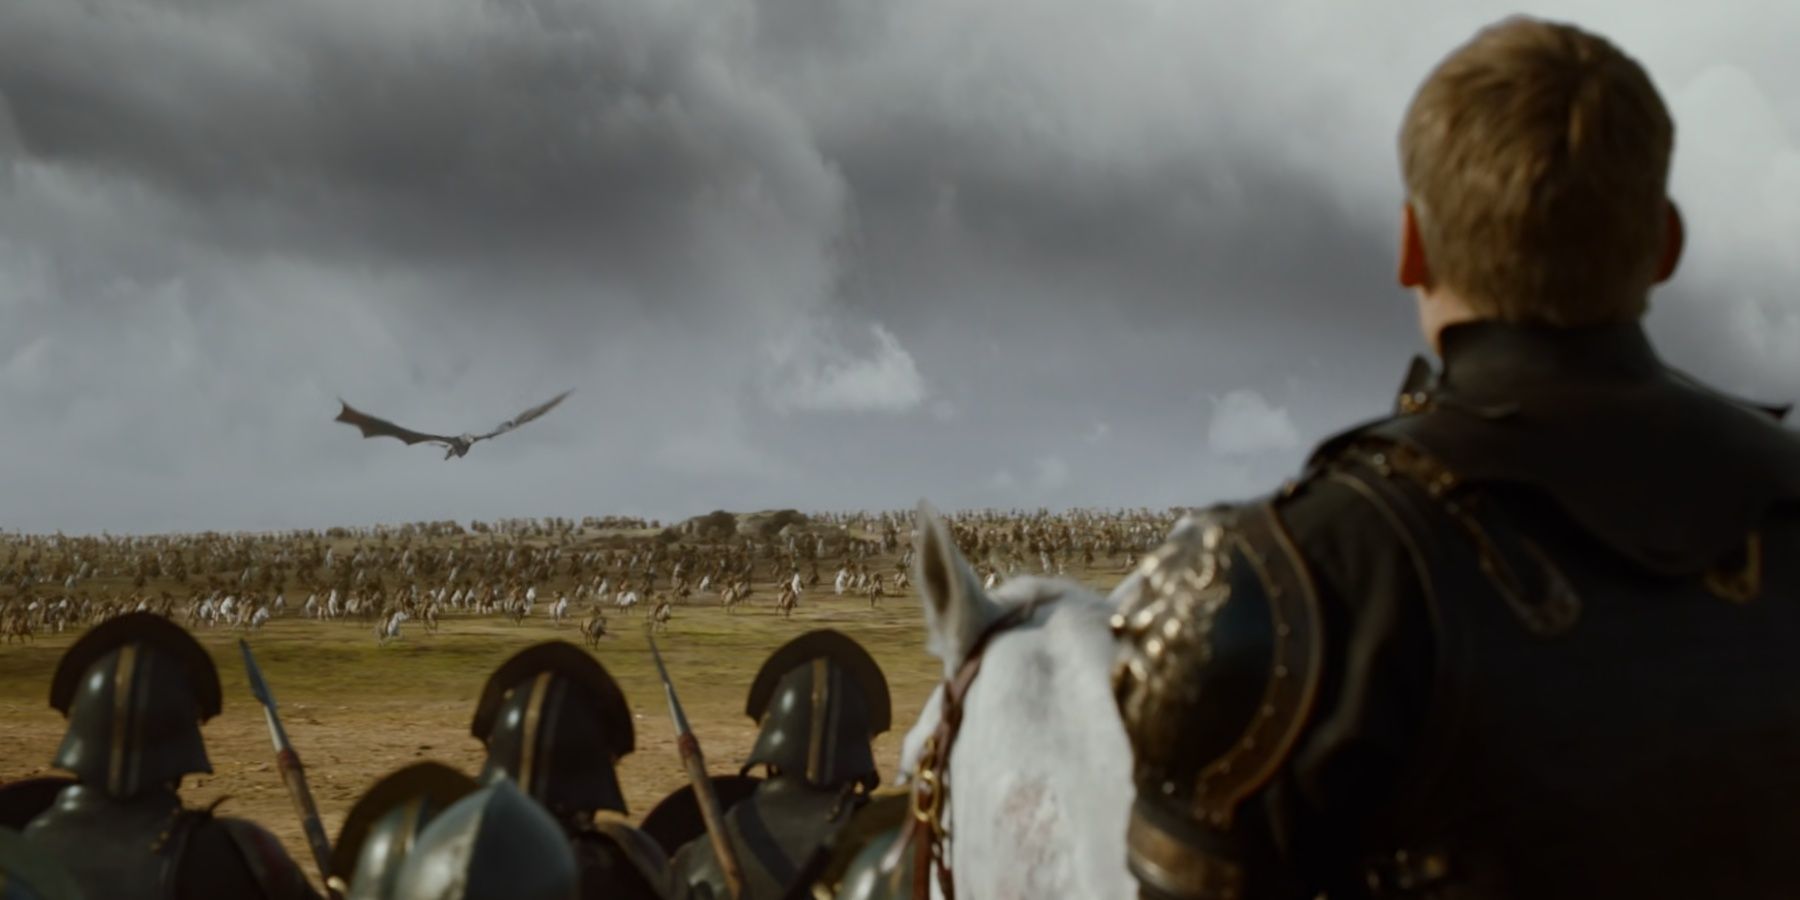 Daenerys no topo de Drogon e sua horda Dothraki emboscam o exército de campo Lannister-Tarly em Game of Thrones.